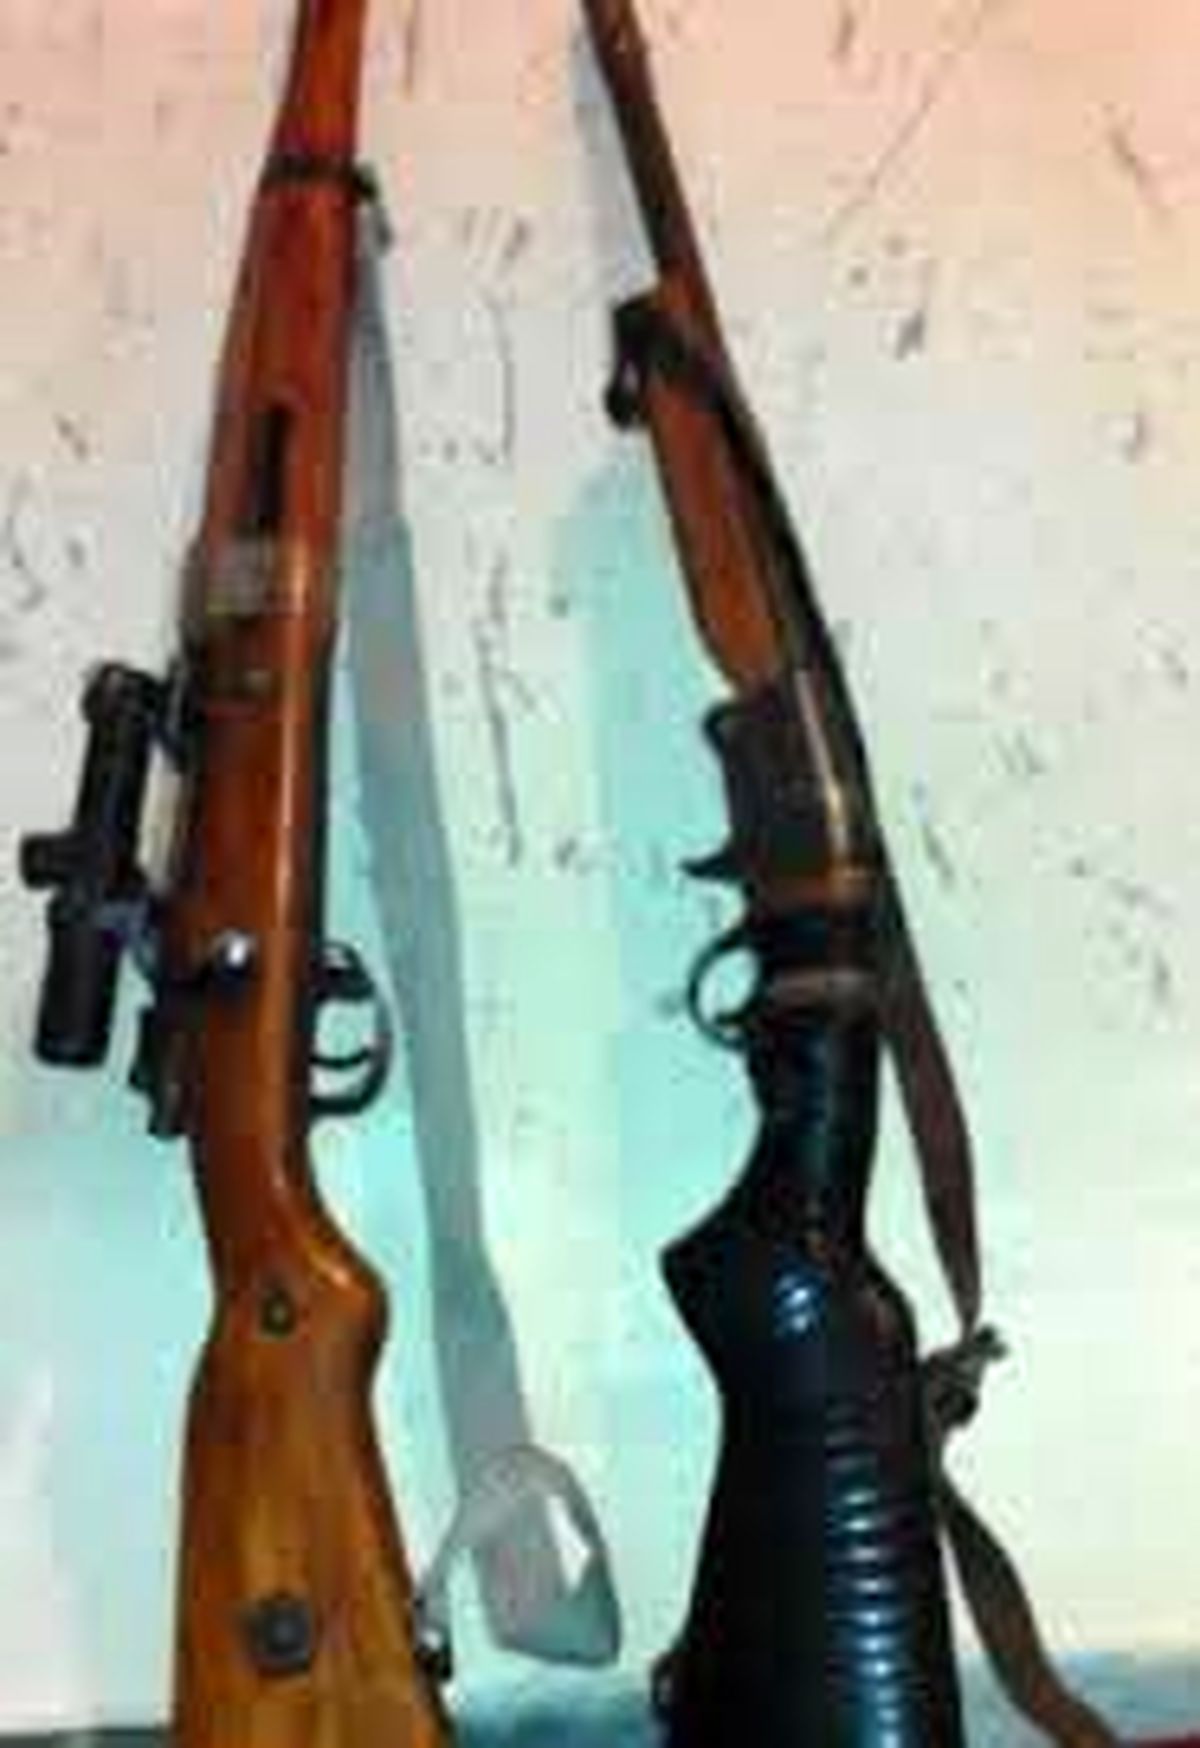 ۲ قبضه اسلحه شکاری از متخلفین قبل از اقدام به شکار در الیگودرز کشف شد